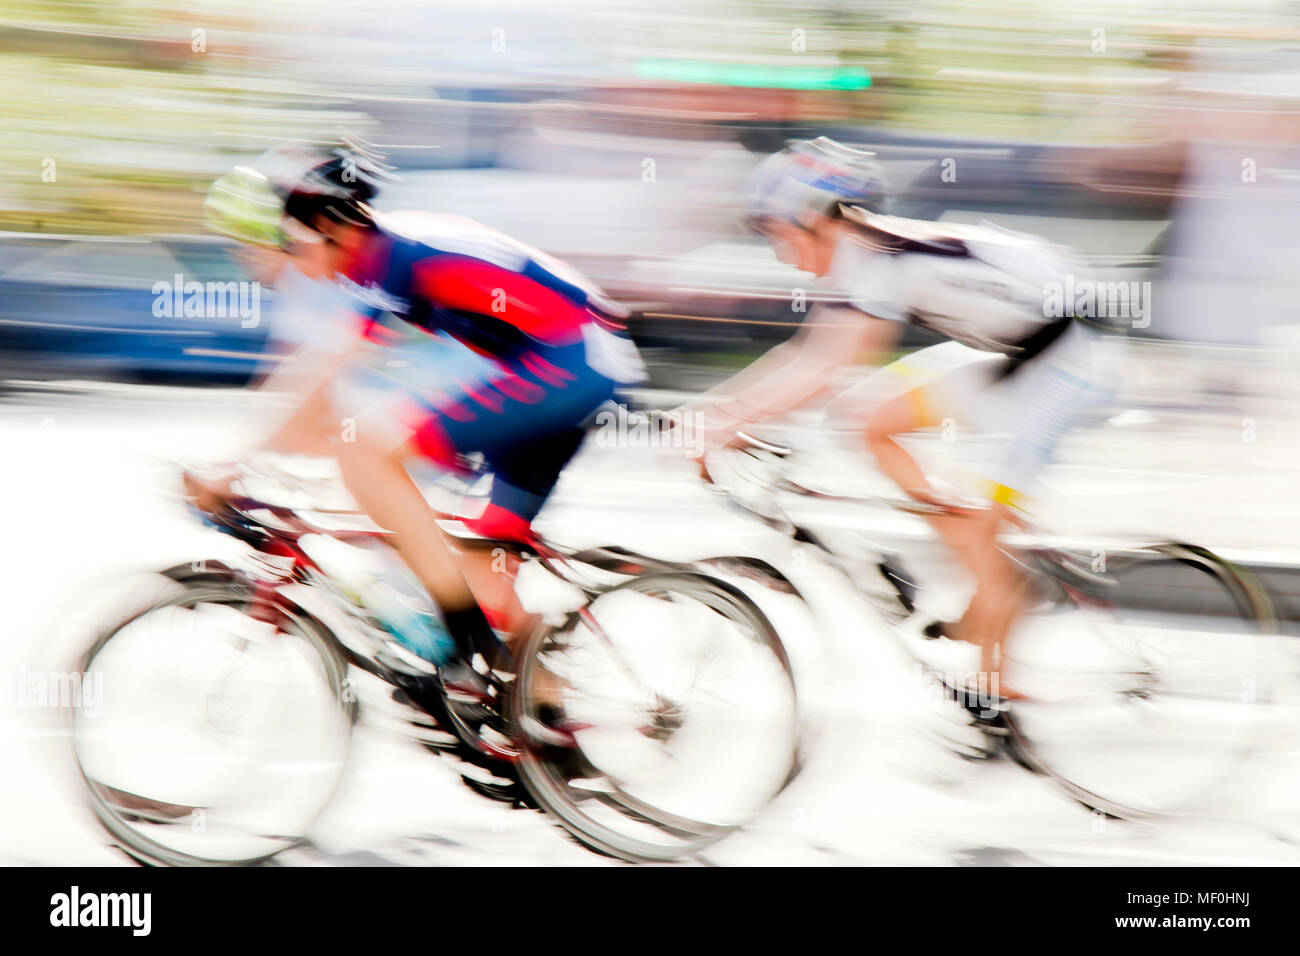 Résumé : L'arrière-plan flou artistique de deux jeunes coureurs de vélo en compétition sur les rues de la ville Banque D'Images